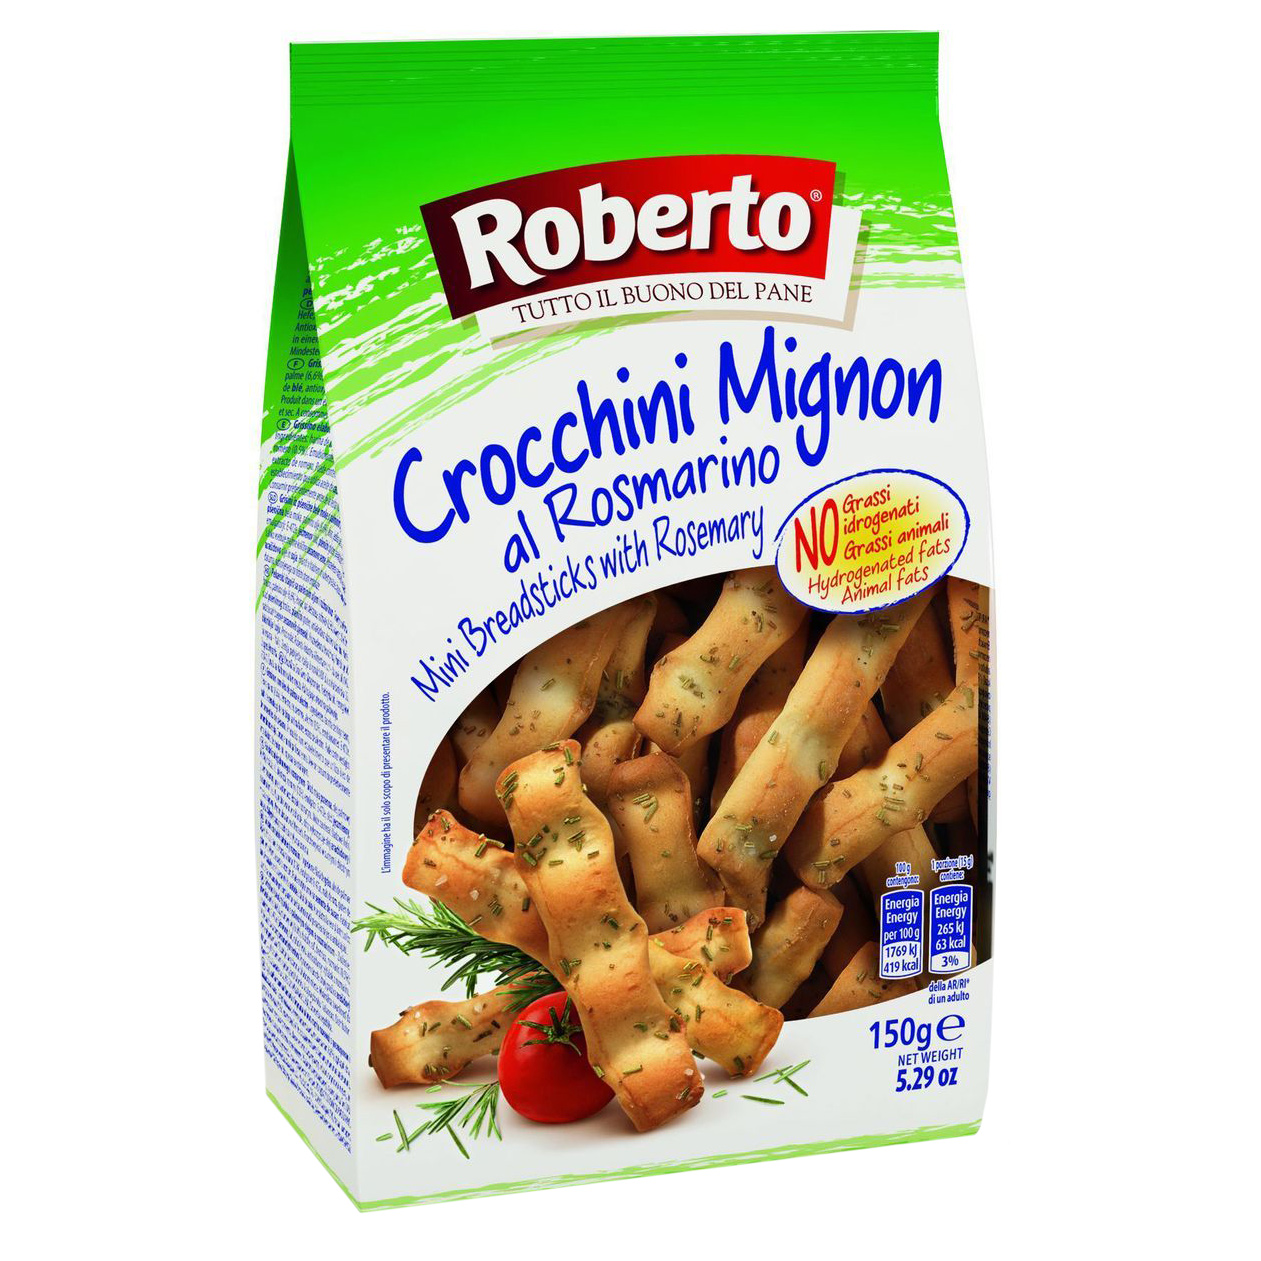 Хлебные палочки Roberto Гриссини Миньон с розмарином 150 г снэки сырные чизолини чечил копченый резаный 30 г